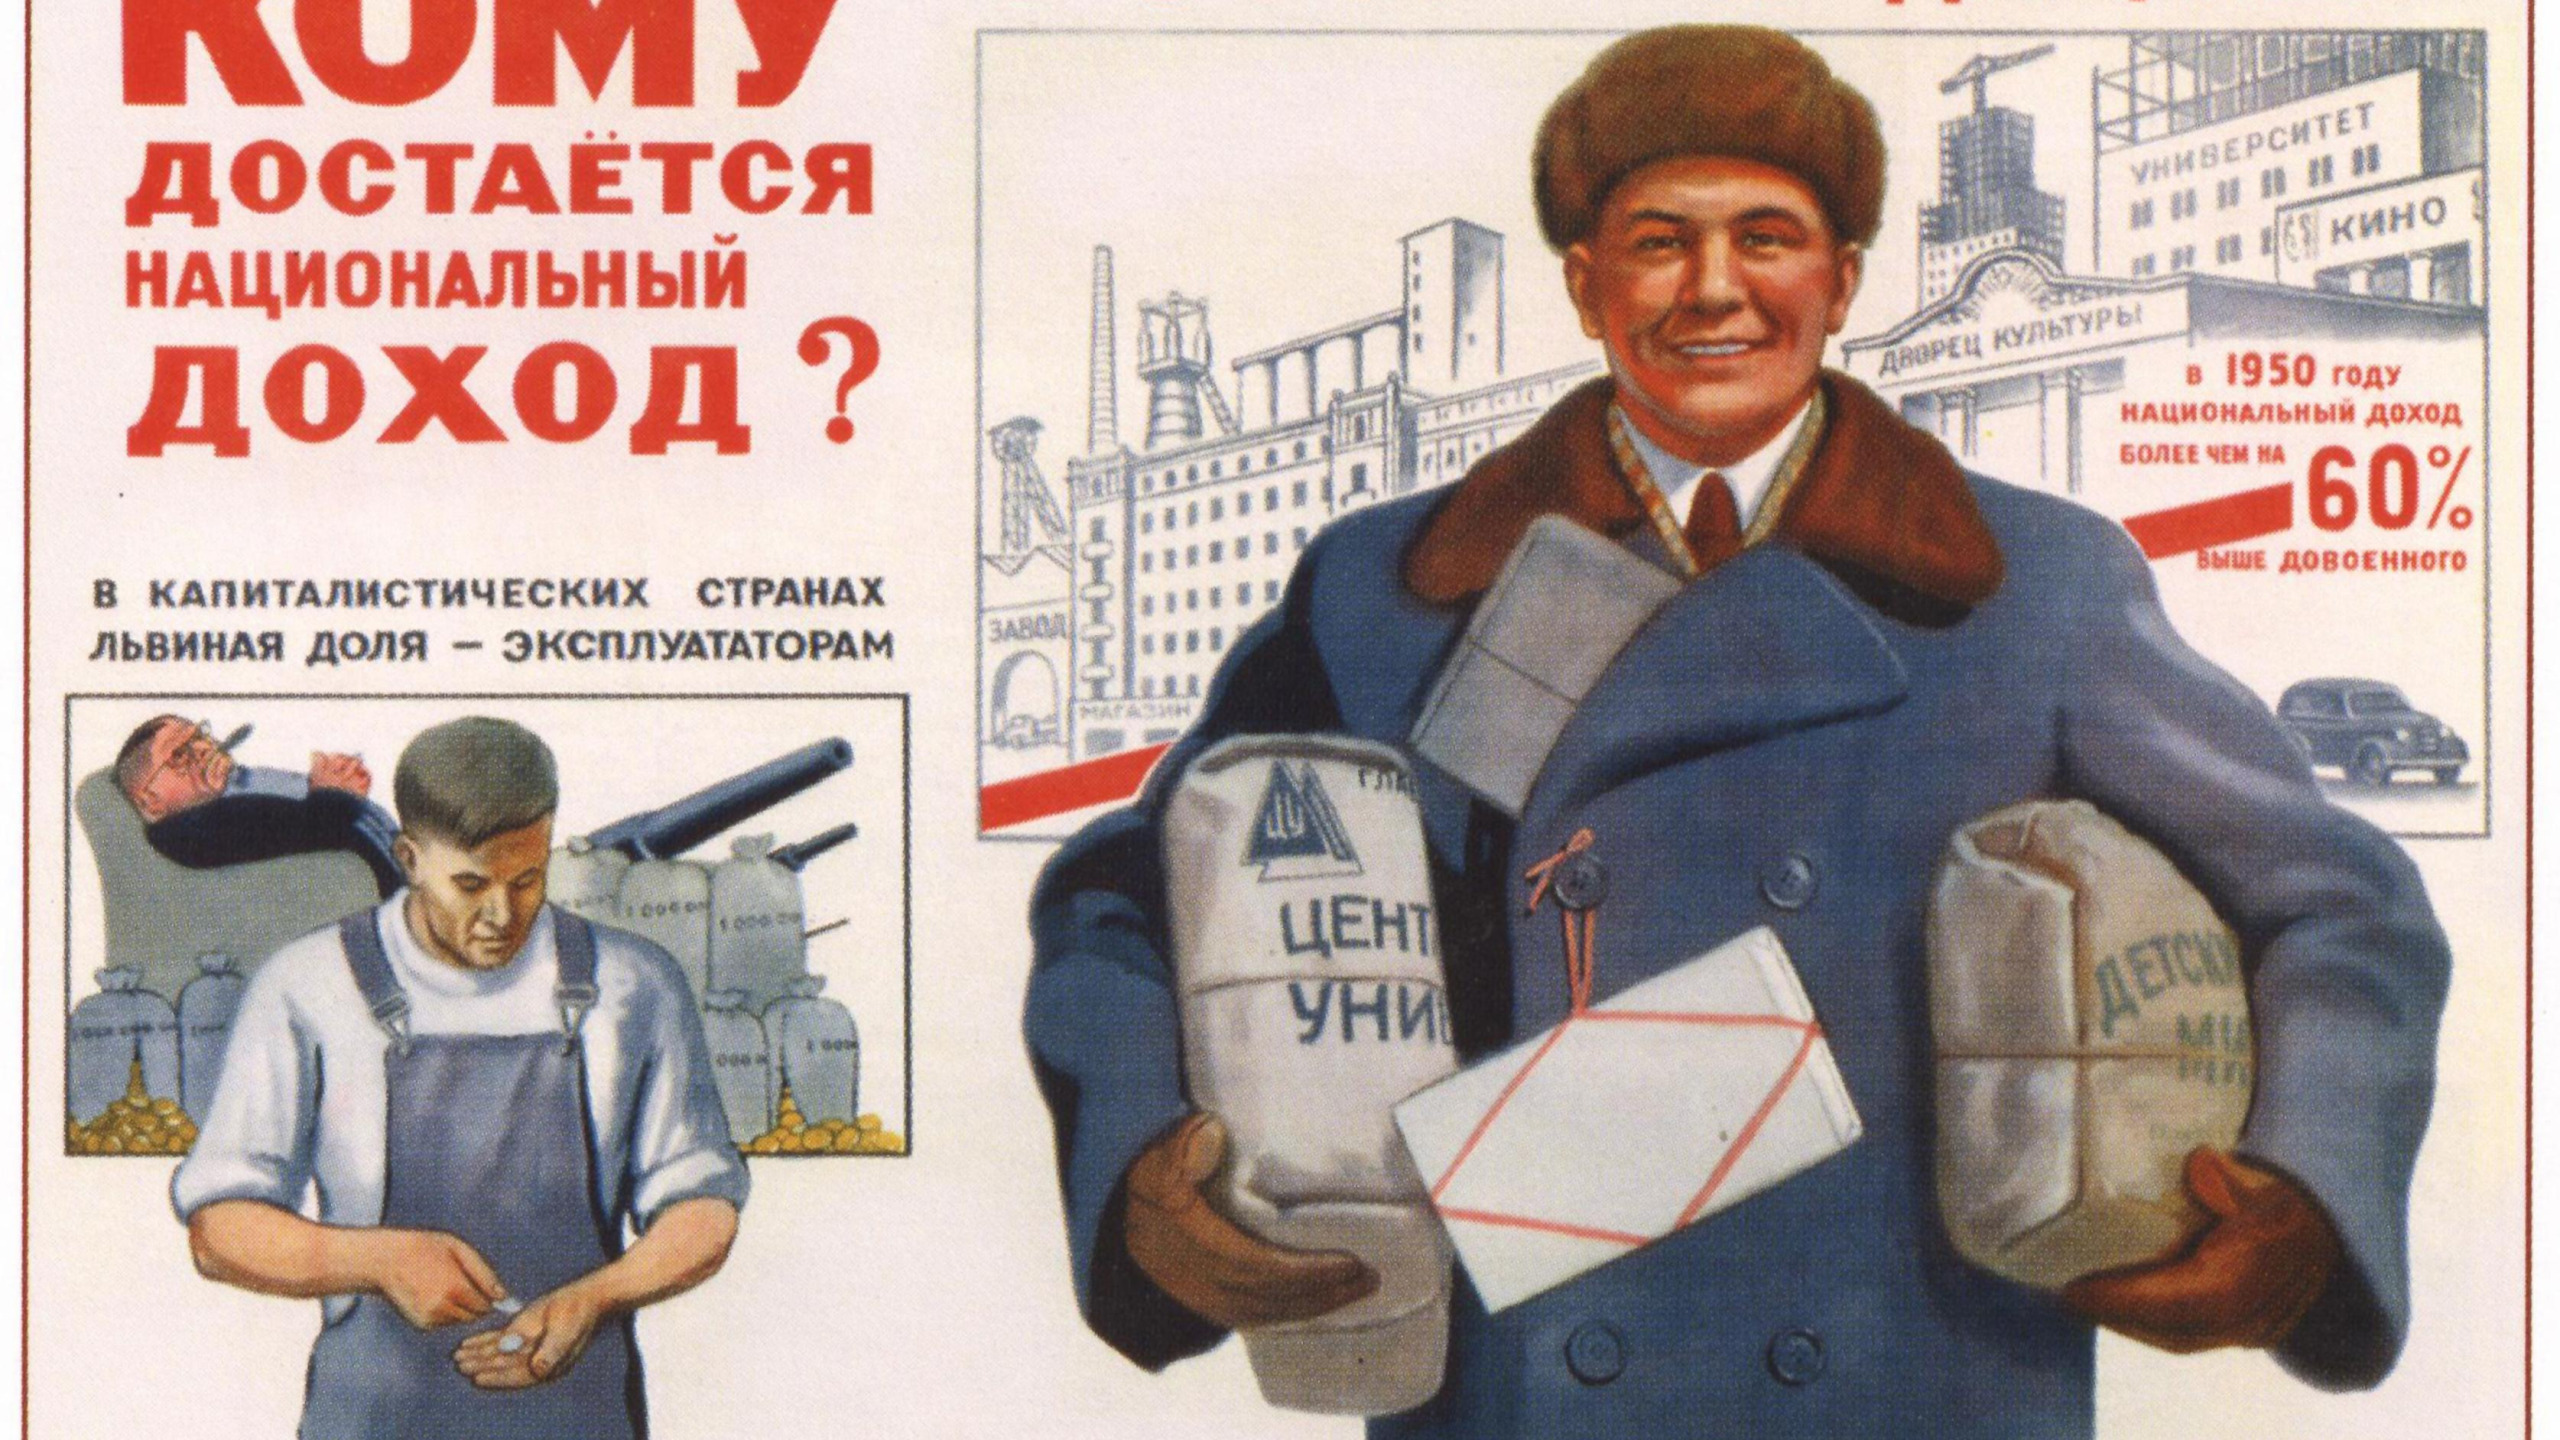 У народа есть вопросы. Советские плакаты. Национальный доход СССР. Кому достается национальный доход плакат. Плакаты СССР про капитализм.